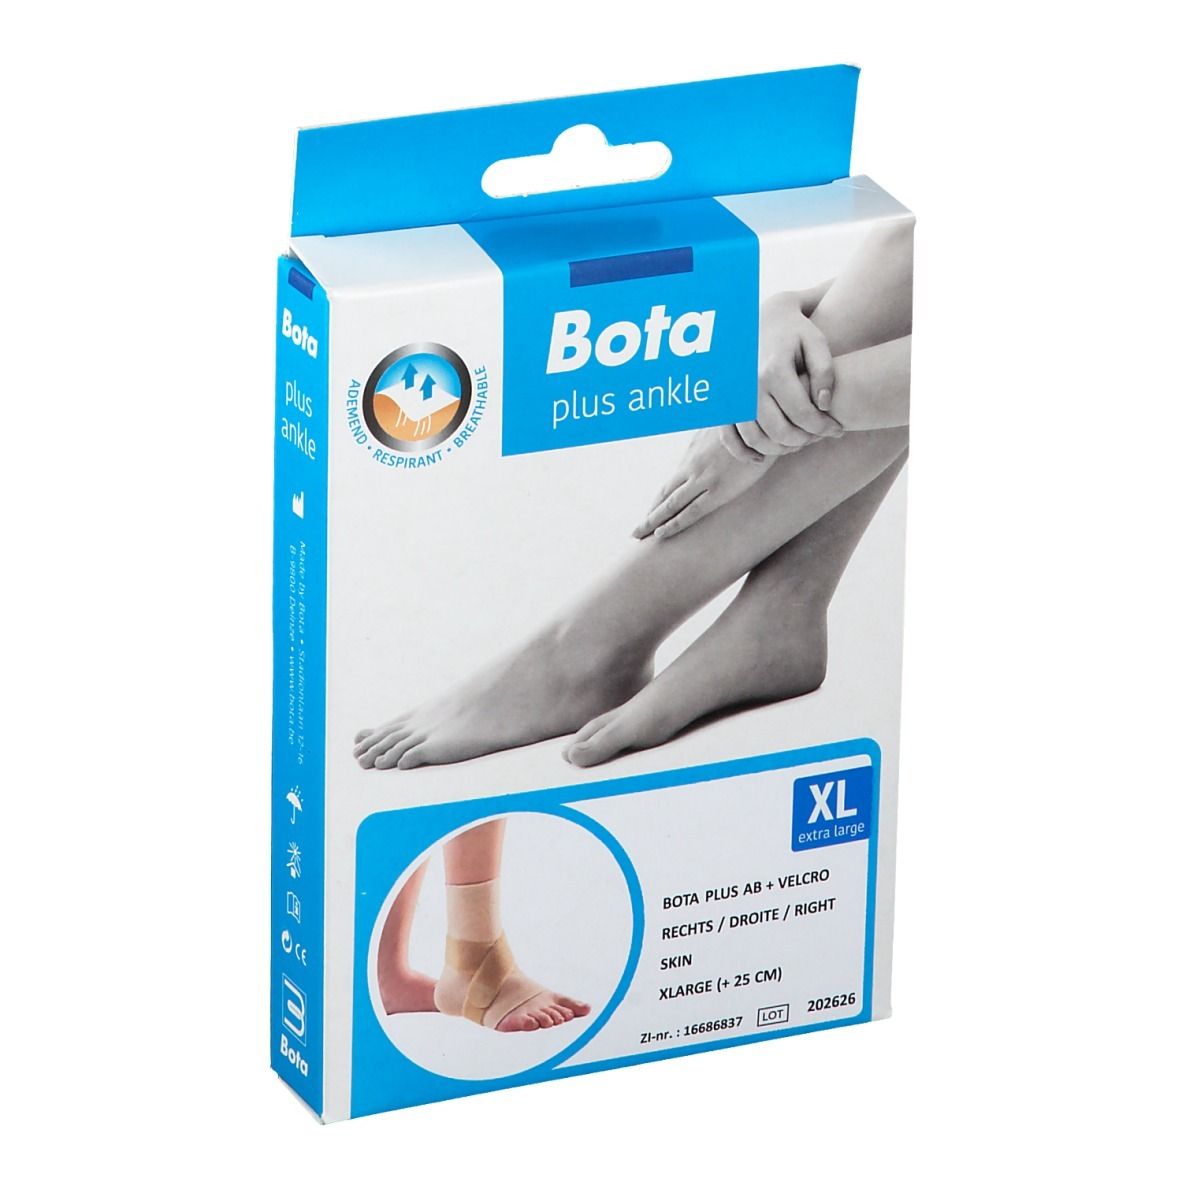 Bota Plus AB Cheville + Velcro Droite Skin XLarge